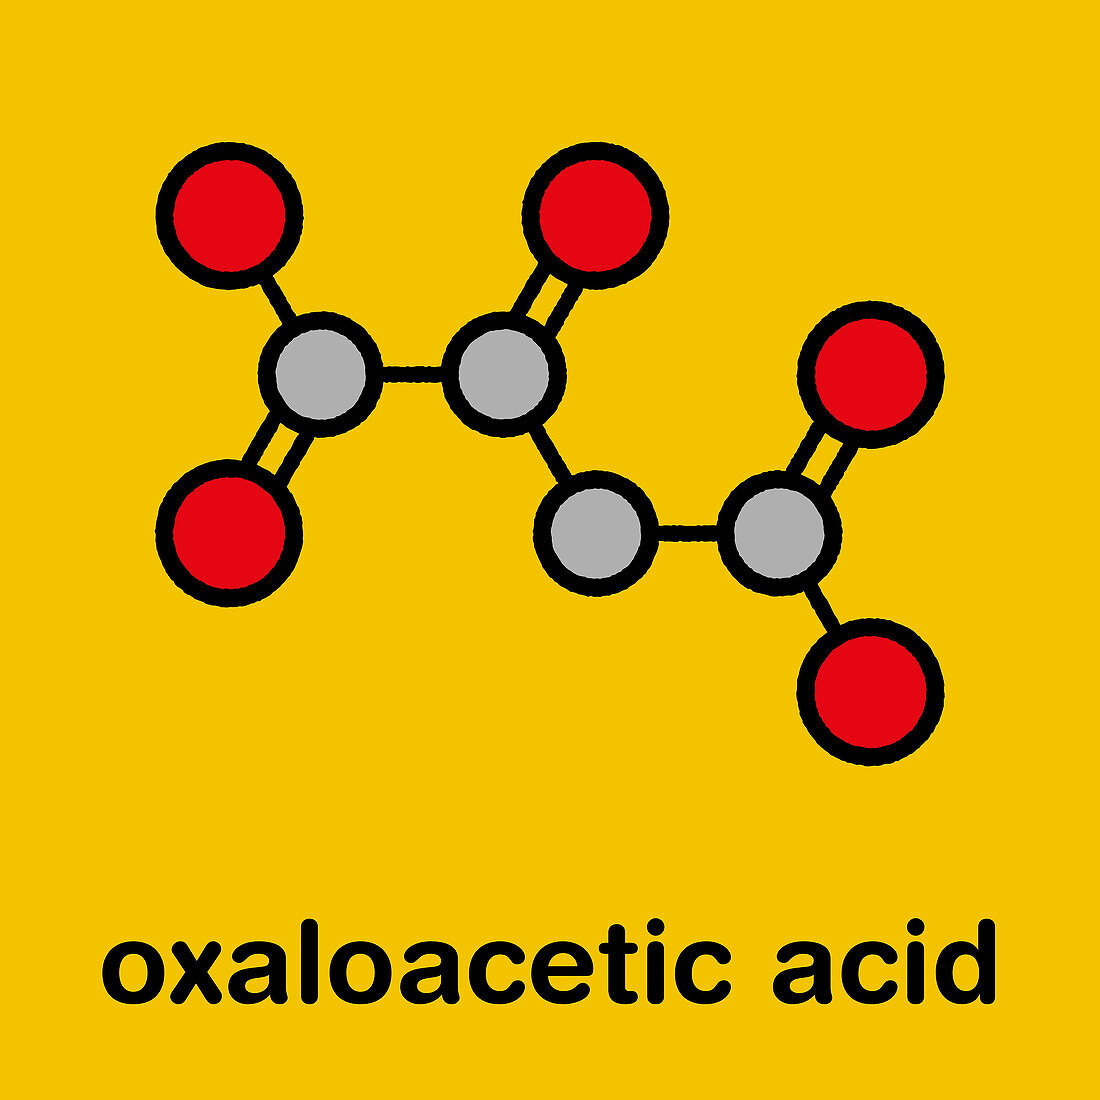 Oxaloacetic acid metabolic intermediate molecule